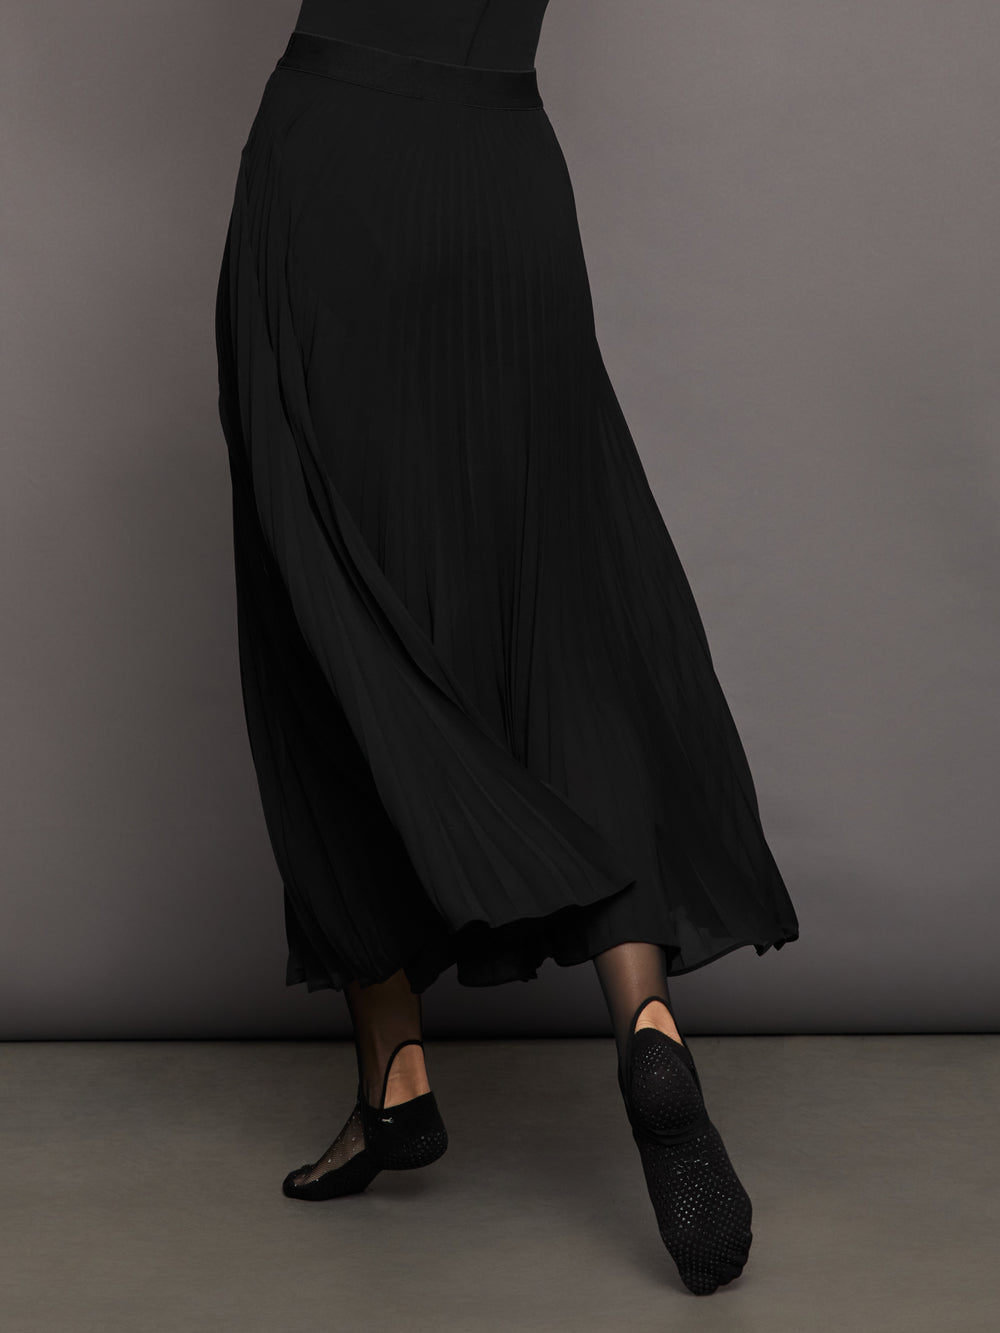 Long black pleated skirt